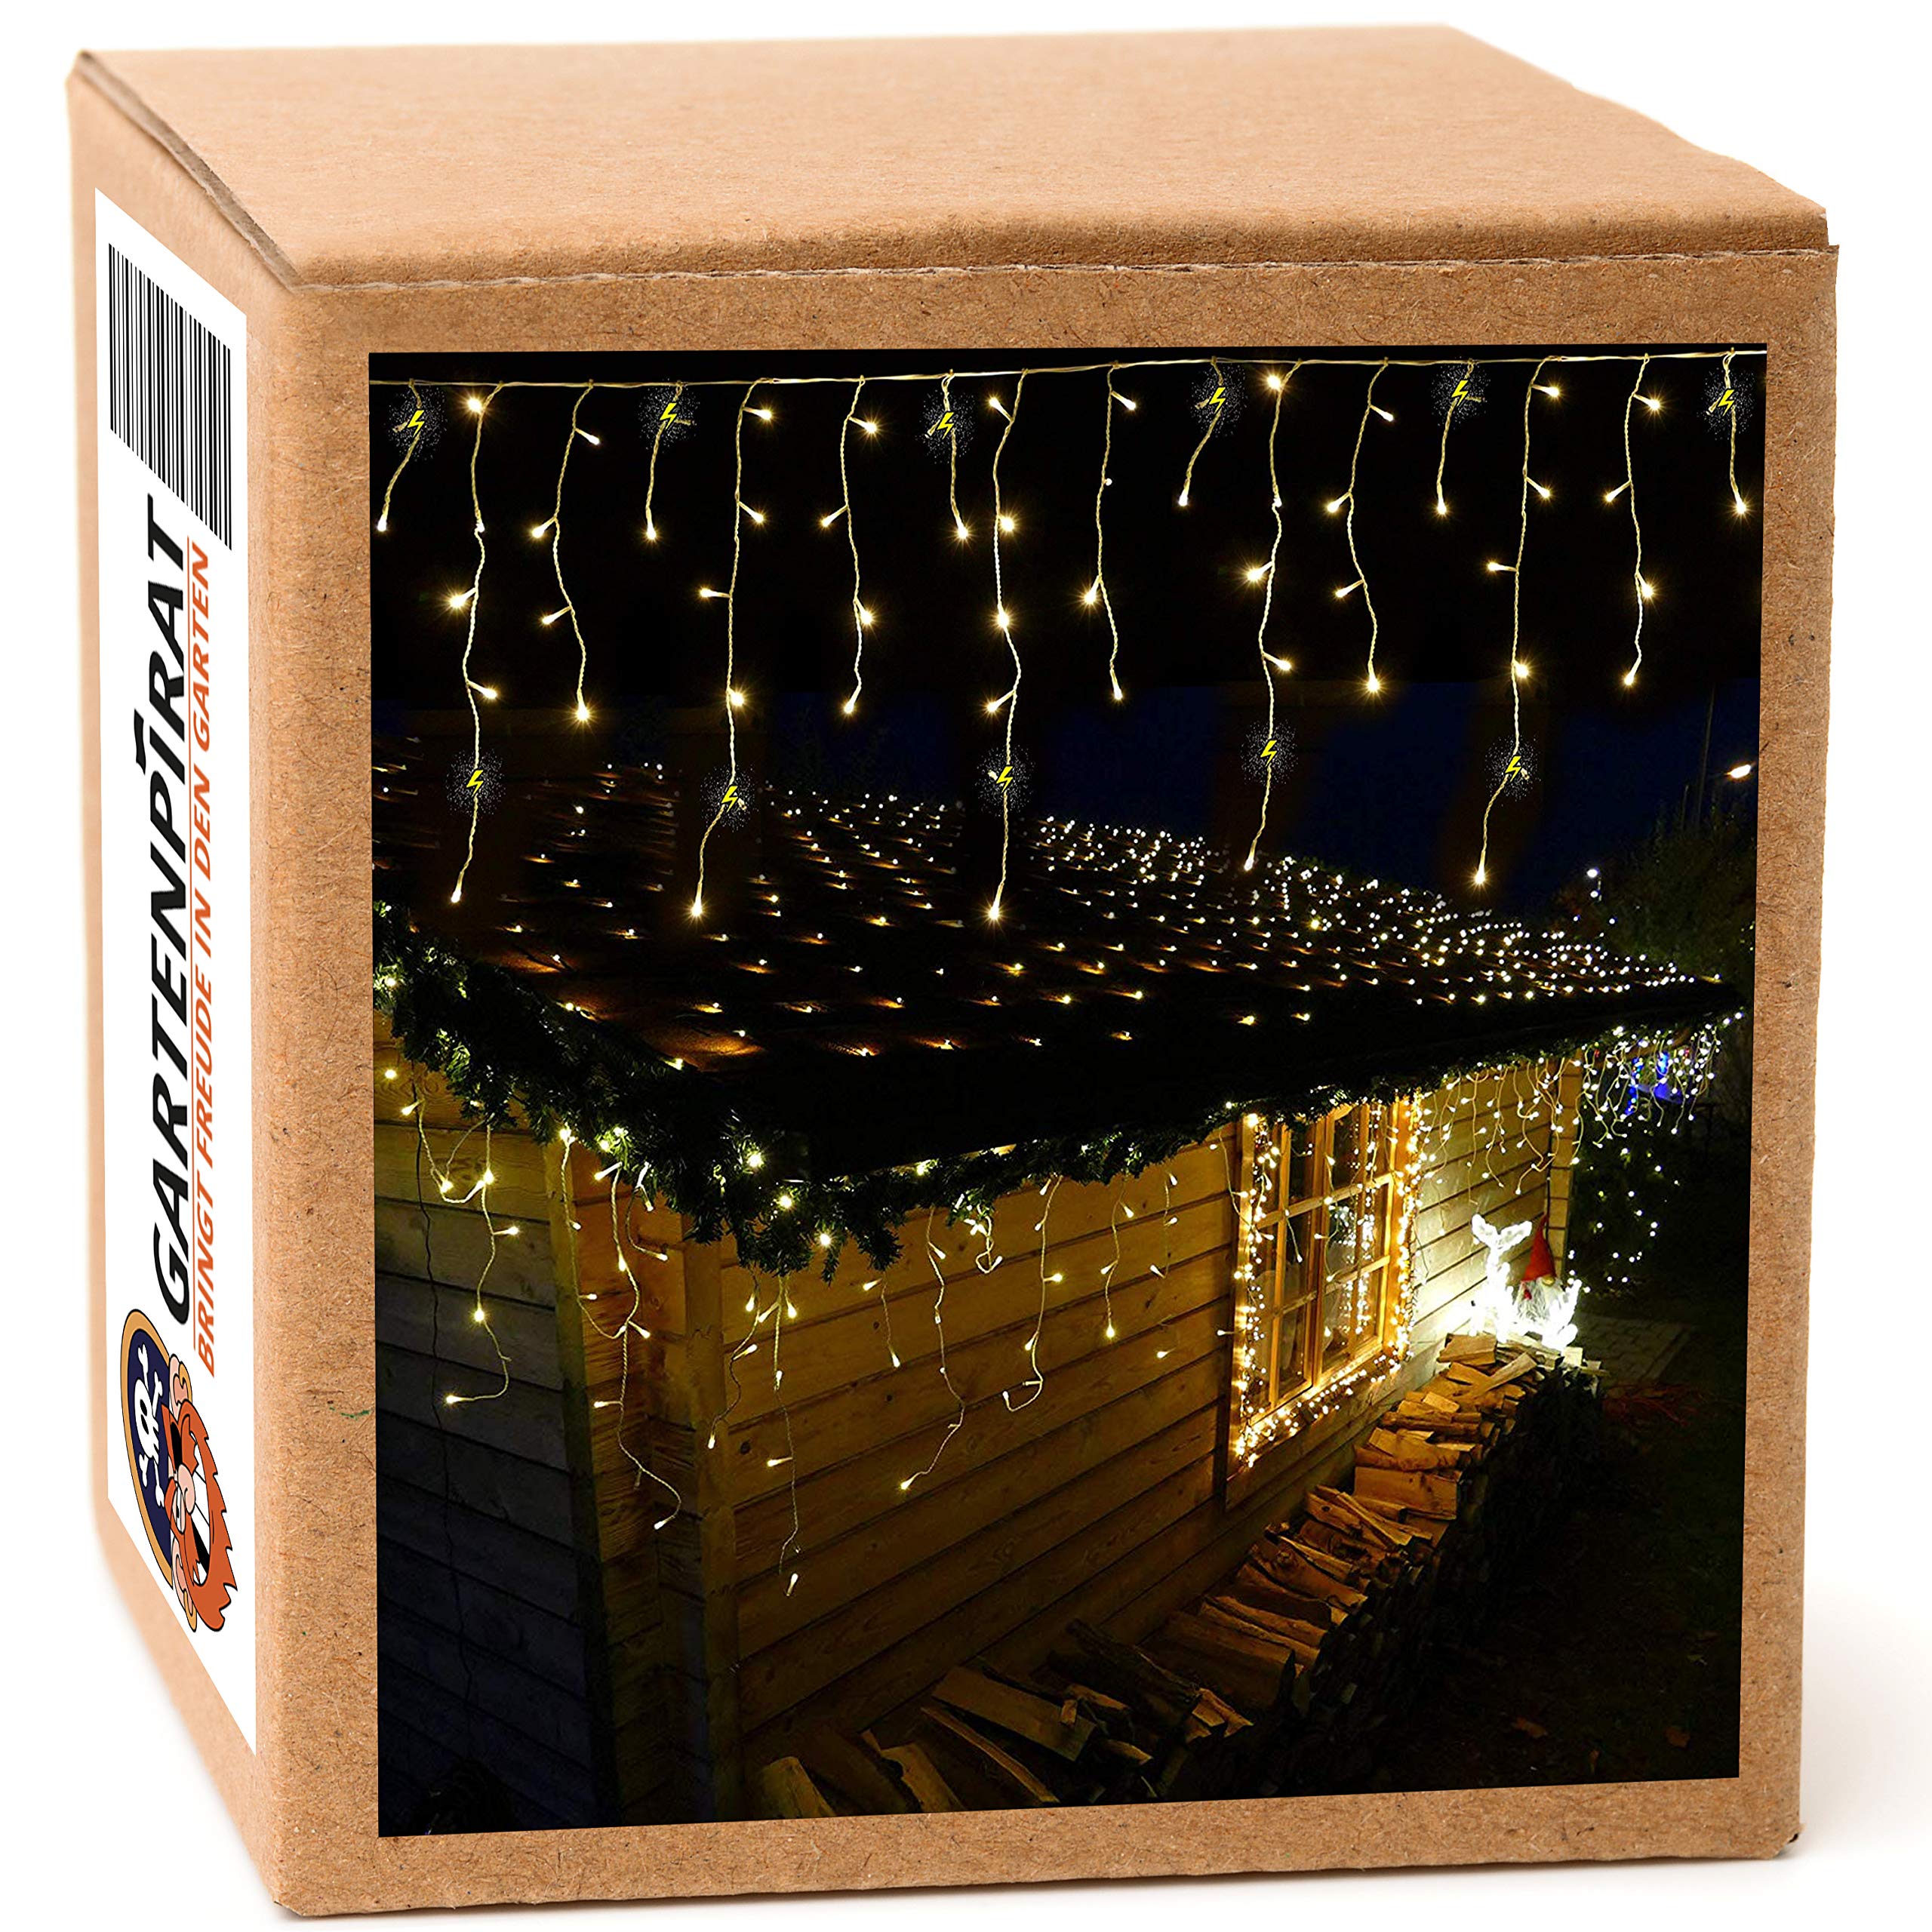 Gartenpirat Weihnachtsbaum Lichterkette warmweiß/bernsteinfarbe 4,2 m • LED-Lichterkette 168 LED außen innen • Timer blinkend Flash-Effekt